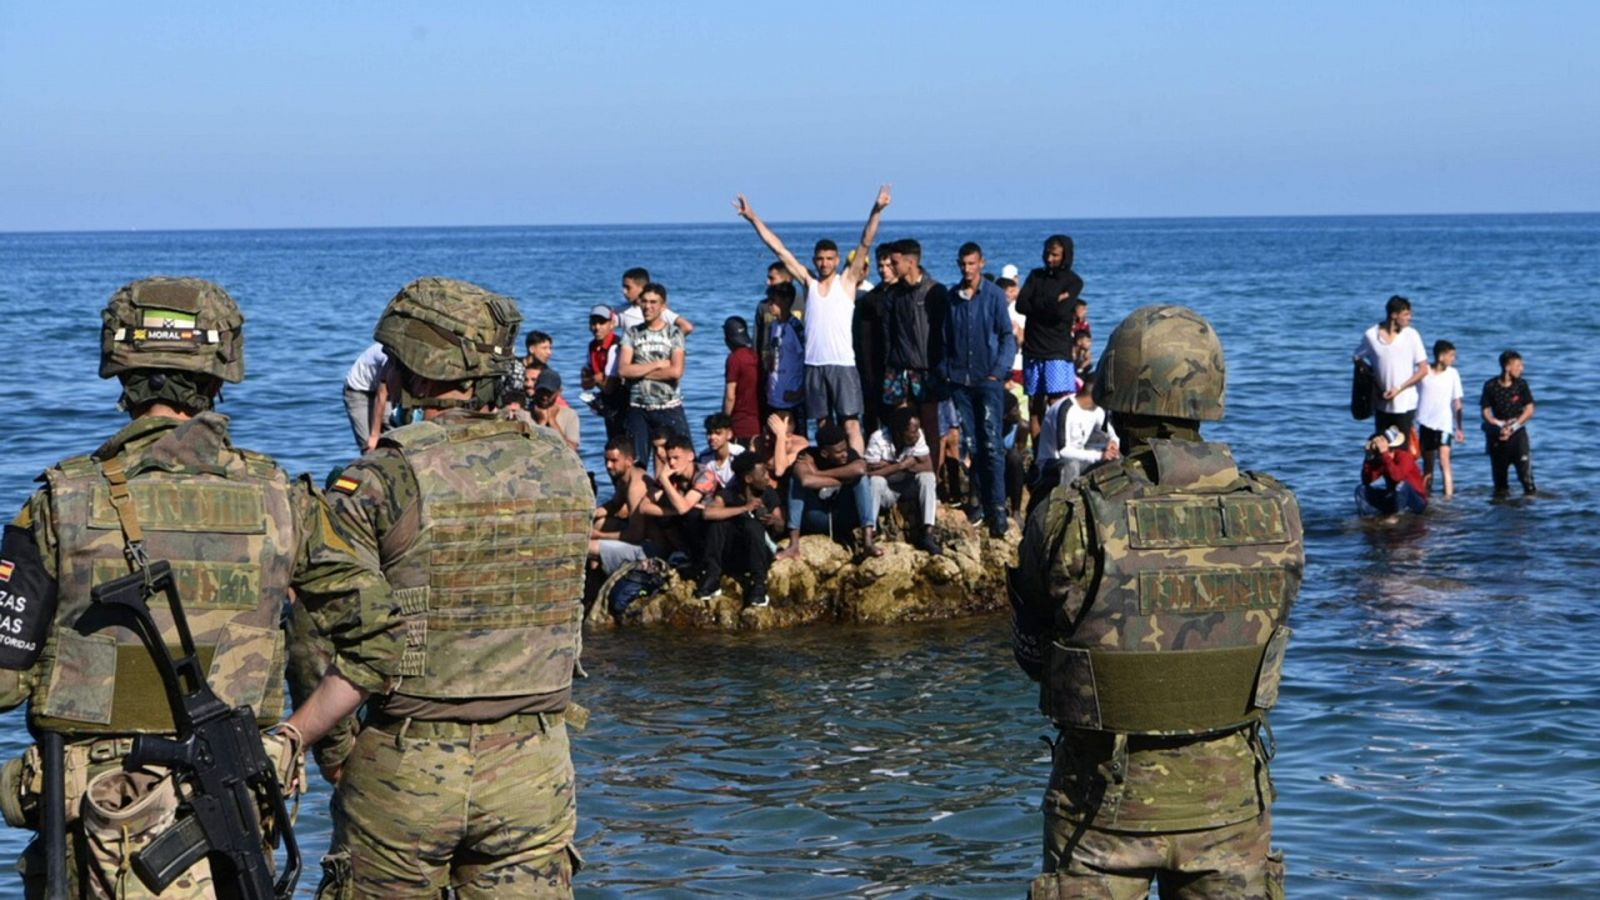 Soldados españoles montan guardia en la frontera entre España y Ceuta mientras un grupo de personas que han cruzado irregularmente se apiñan en una roca en el mar. Antonio Sempere / AFP